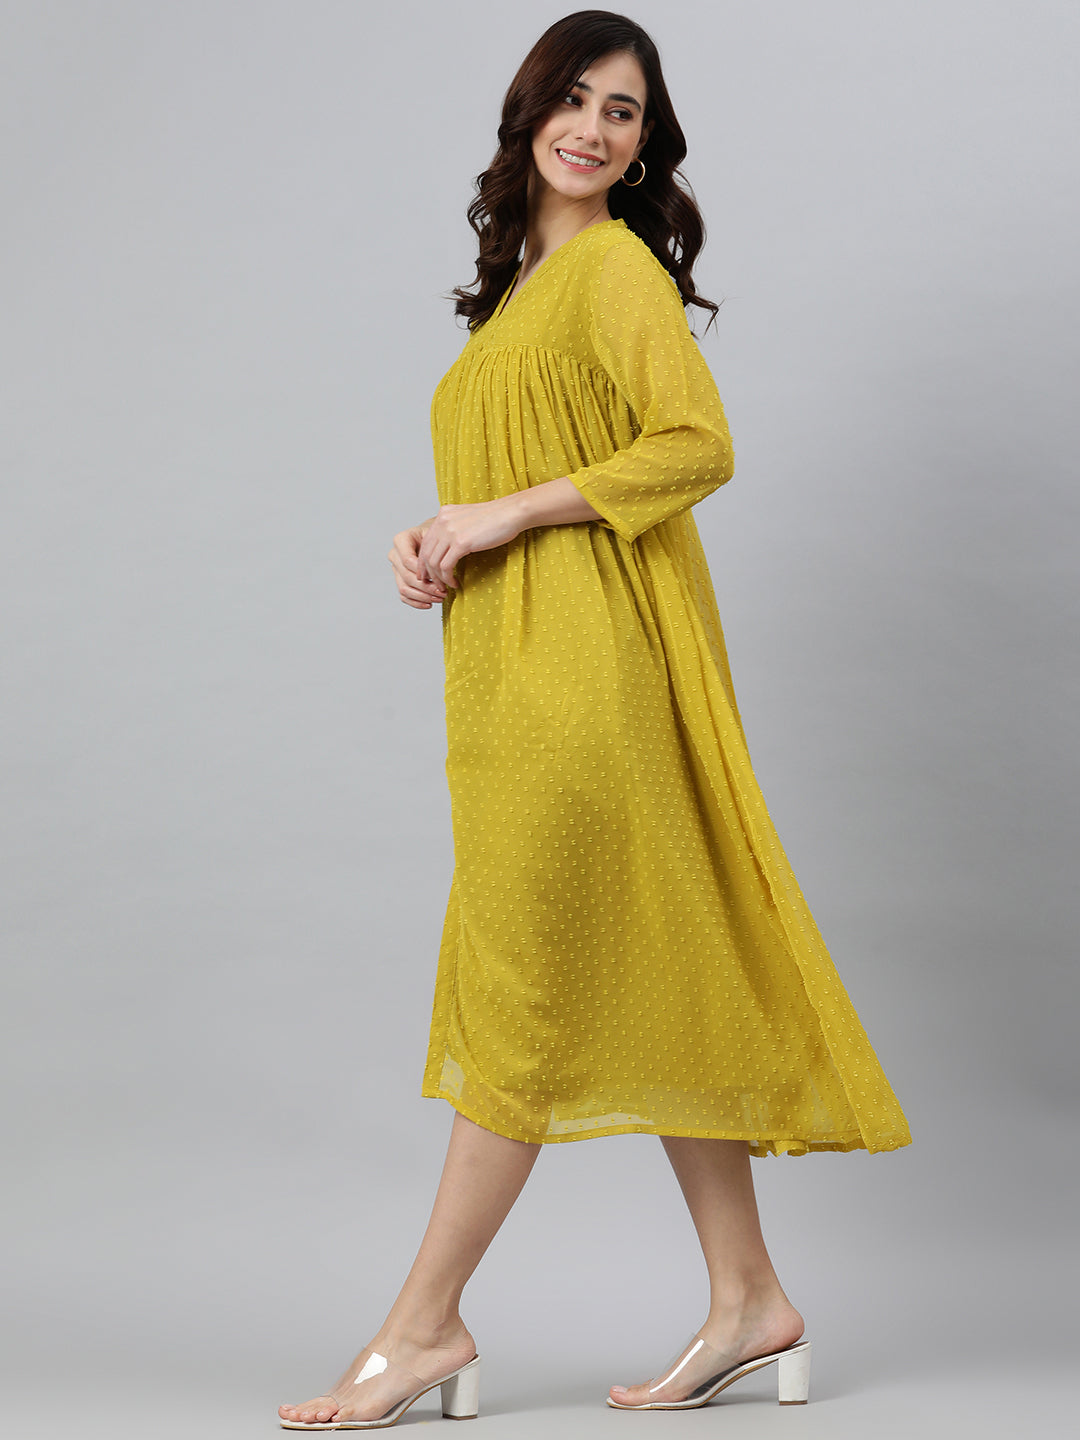 Women's Self Design Mustard Poly Chiffon Dress - Janasya USA